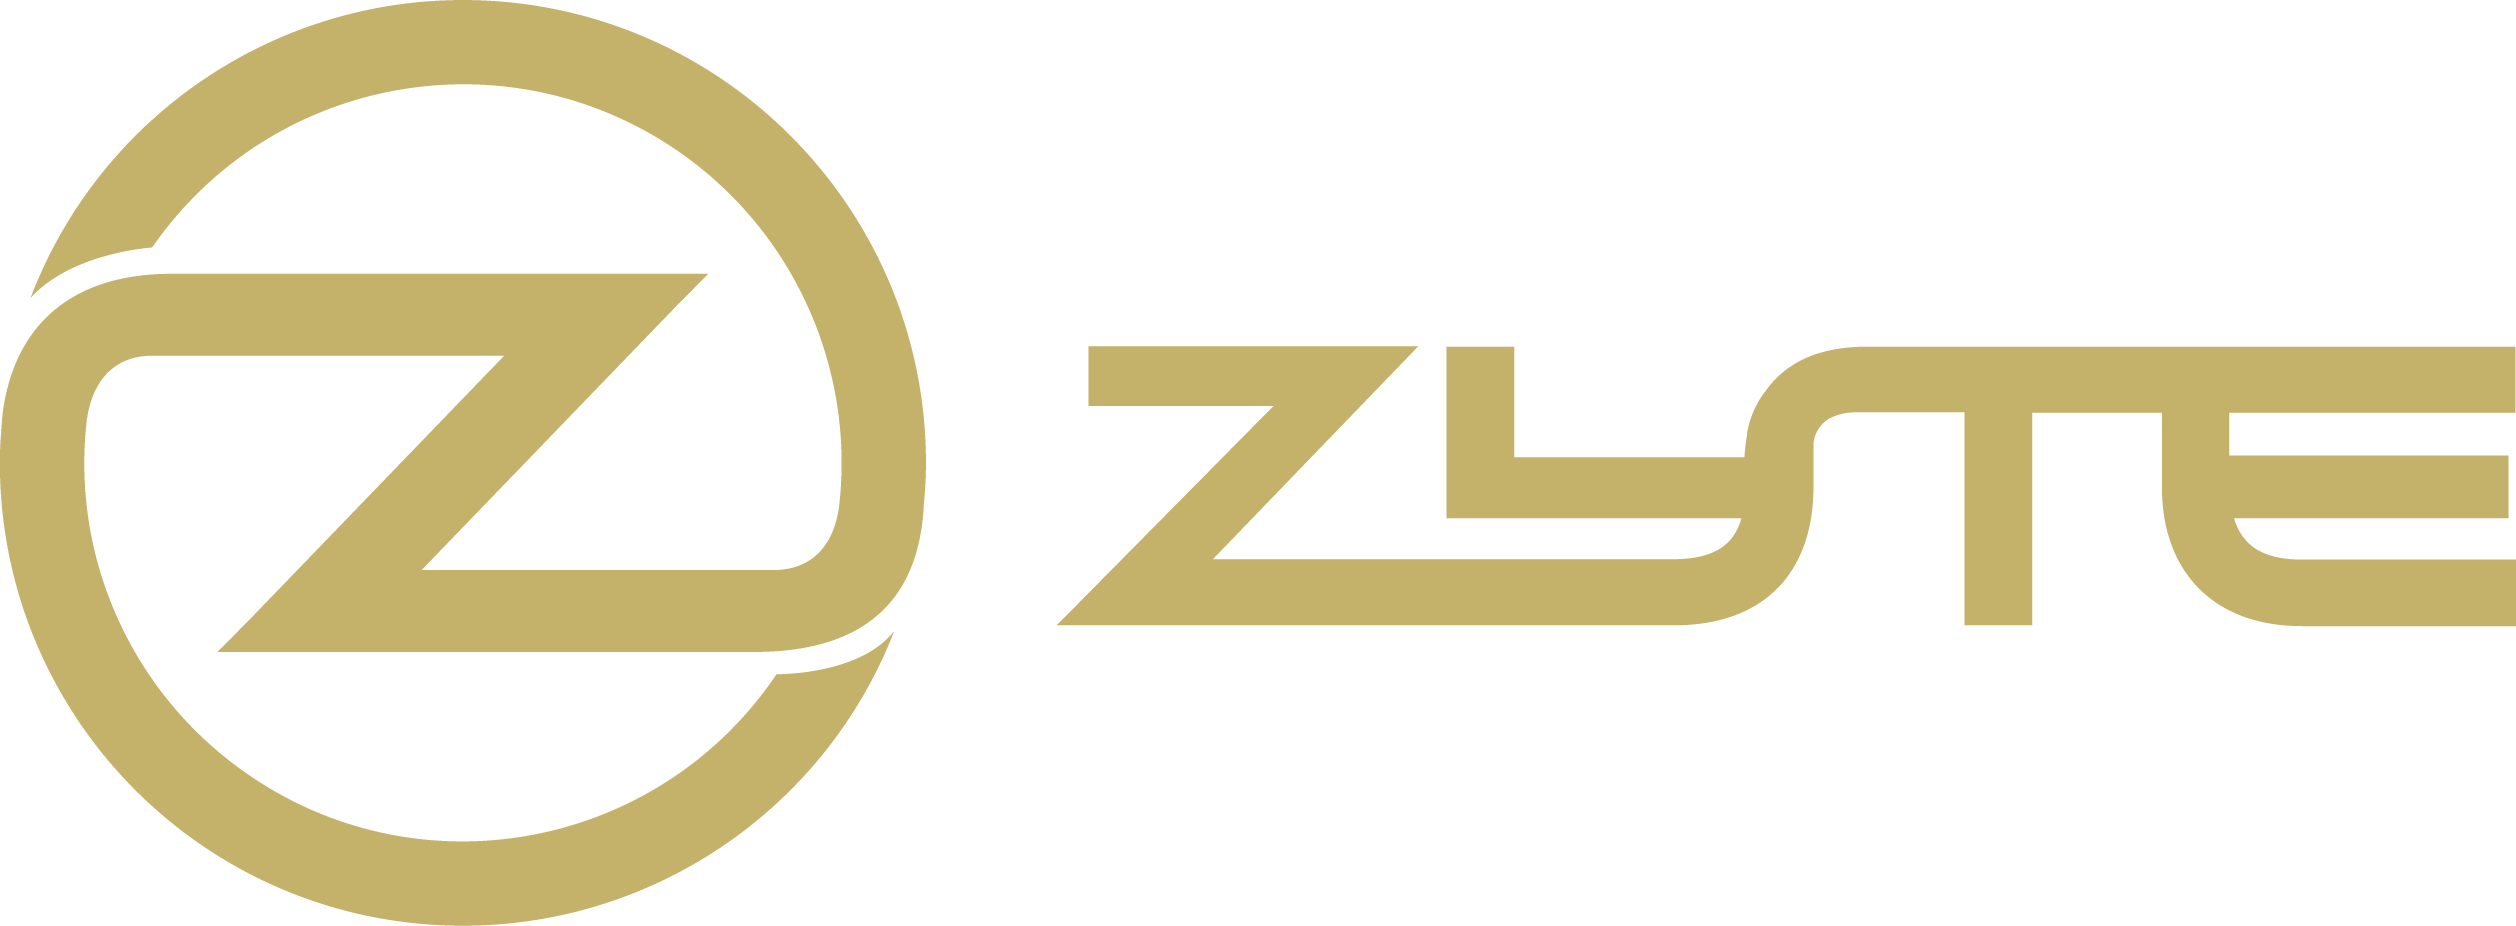 Zyte Logo Gold